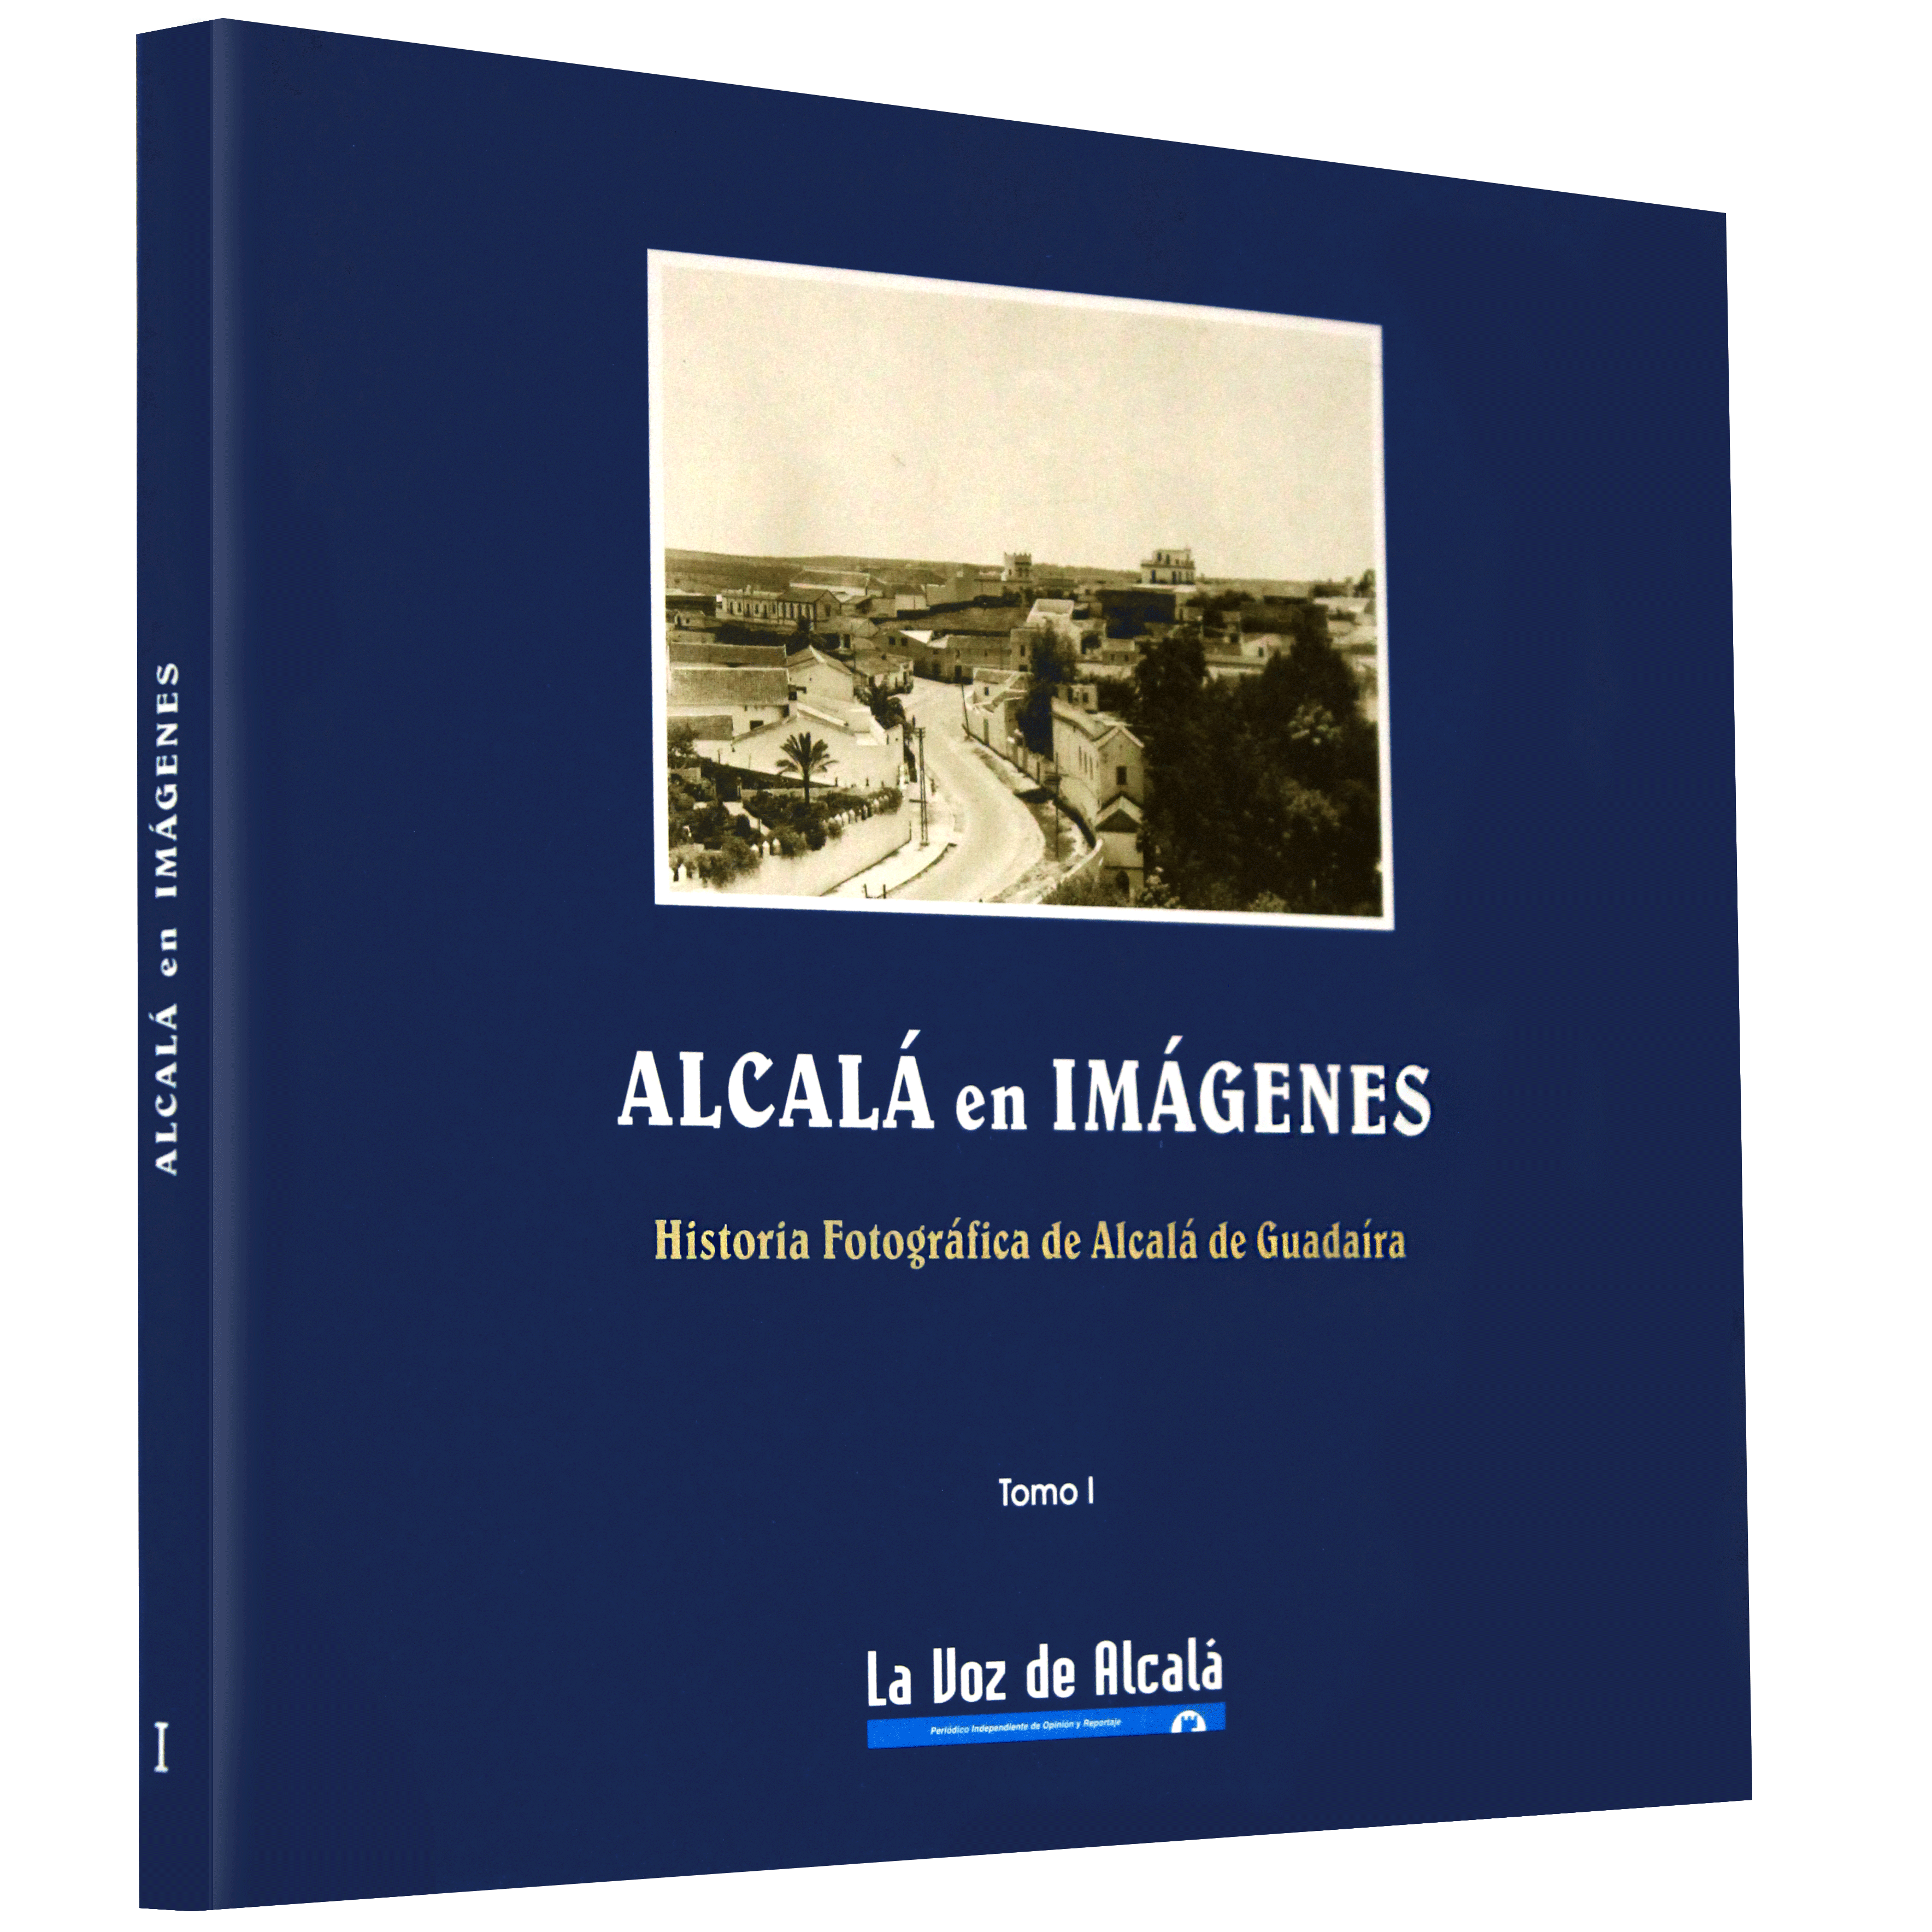 Alcalá en Imágenes, de La Voz de Alcalá